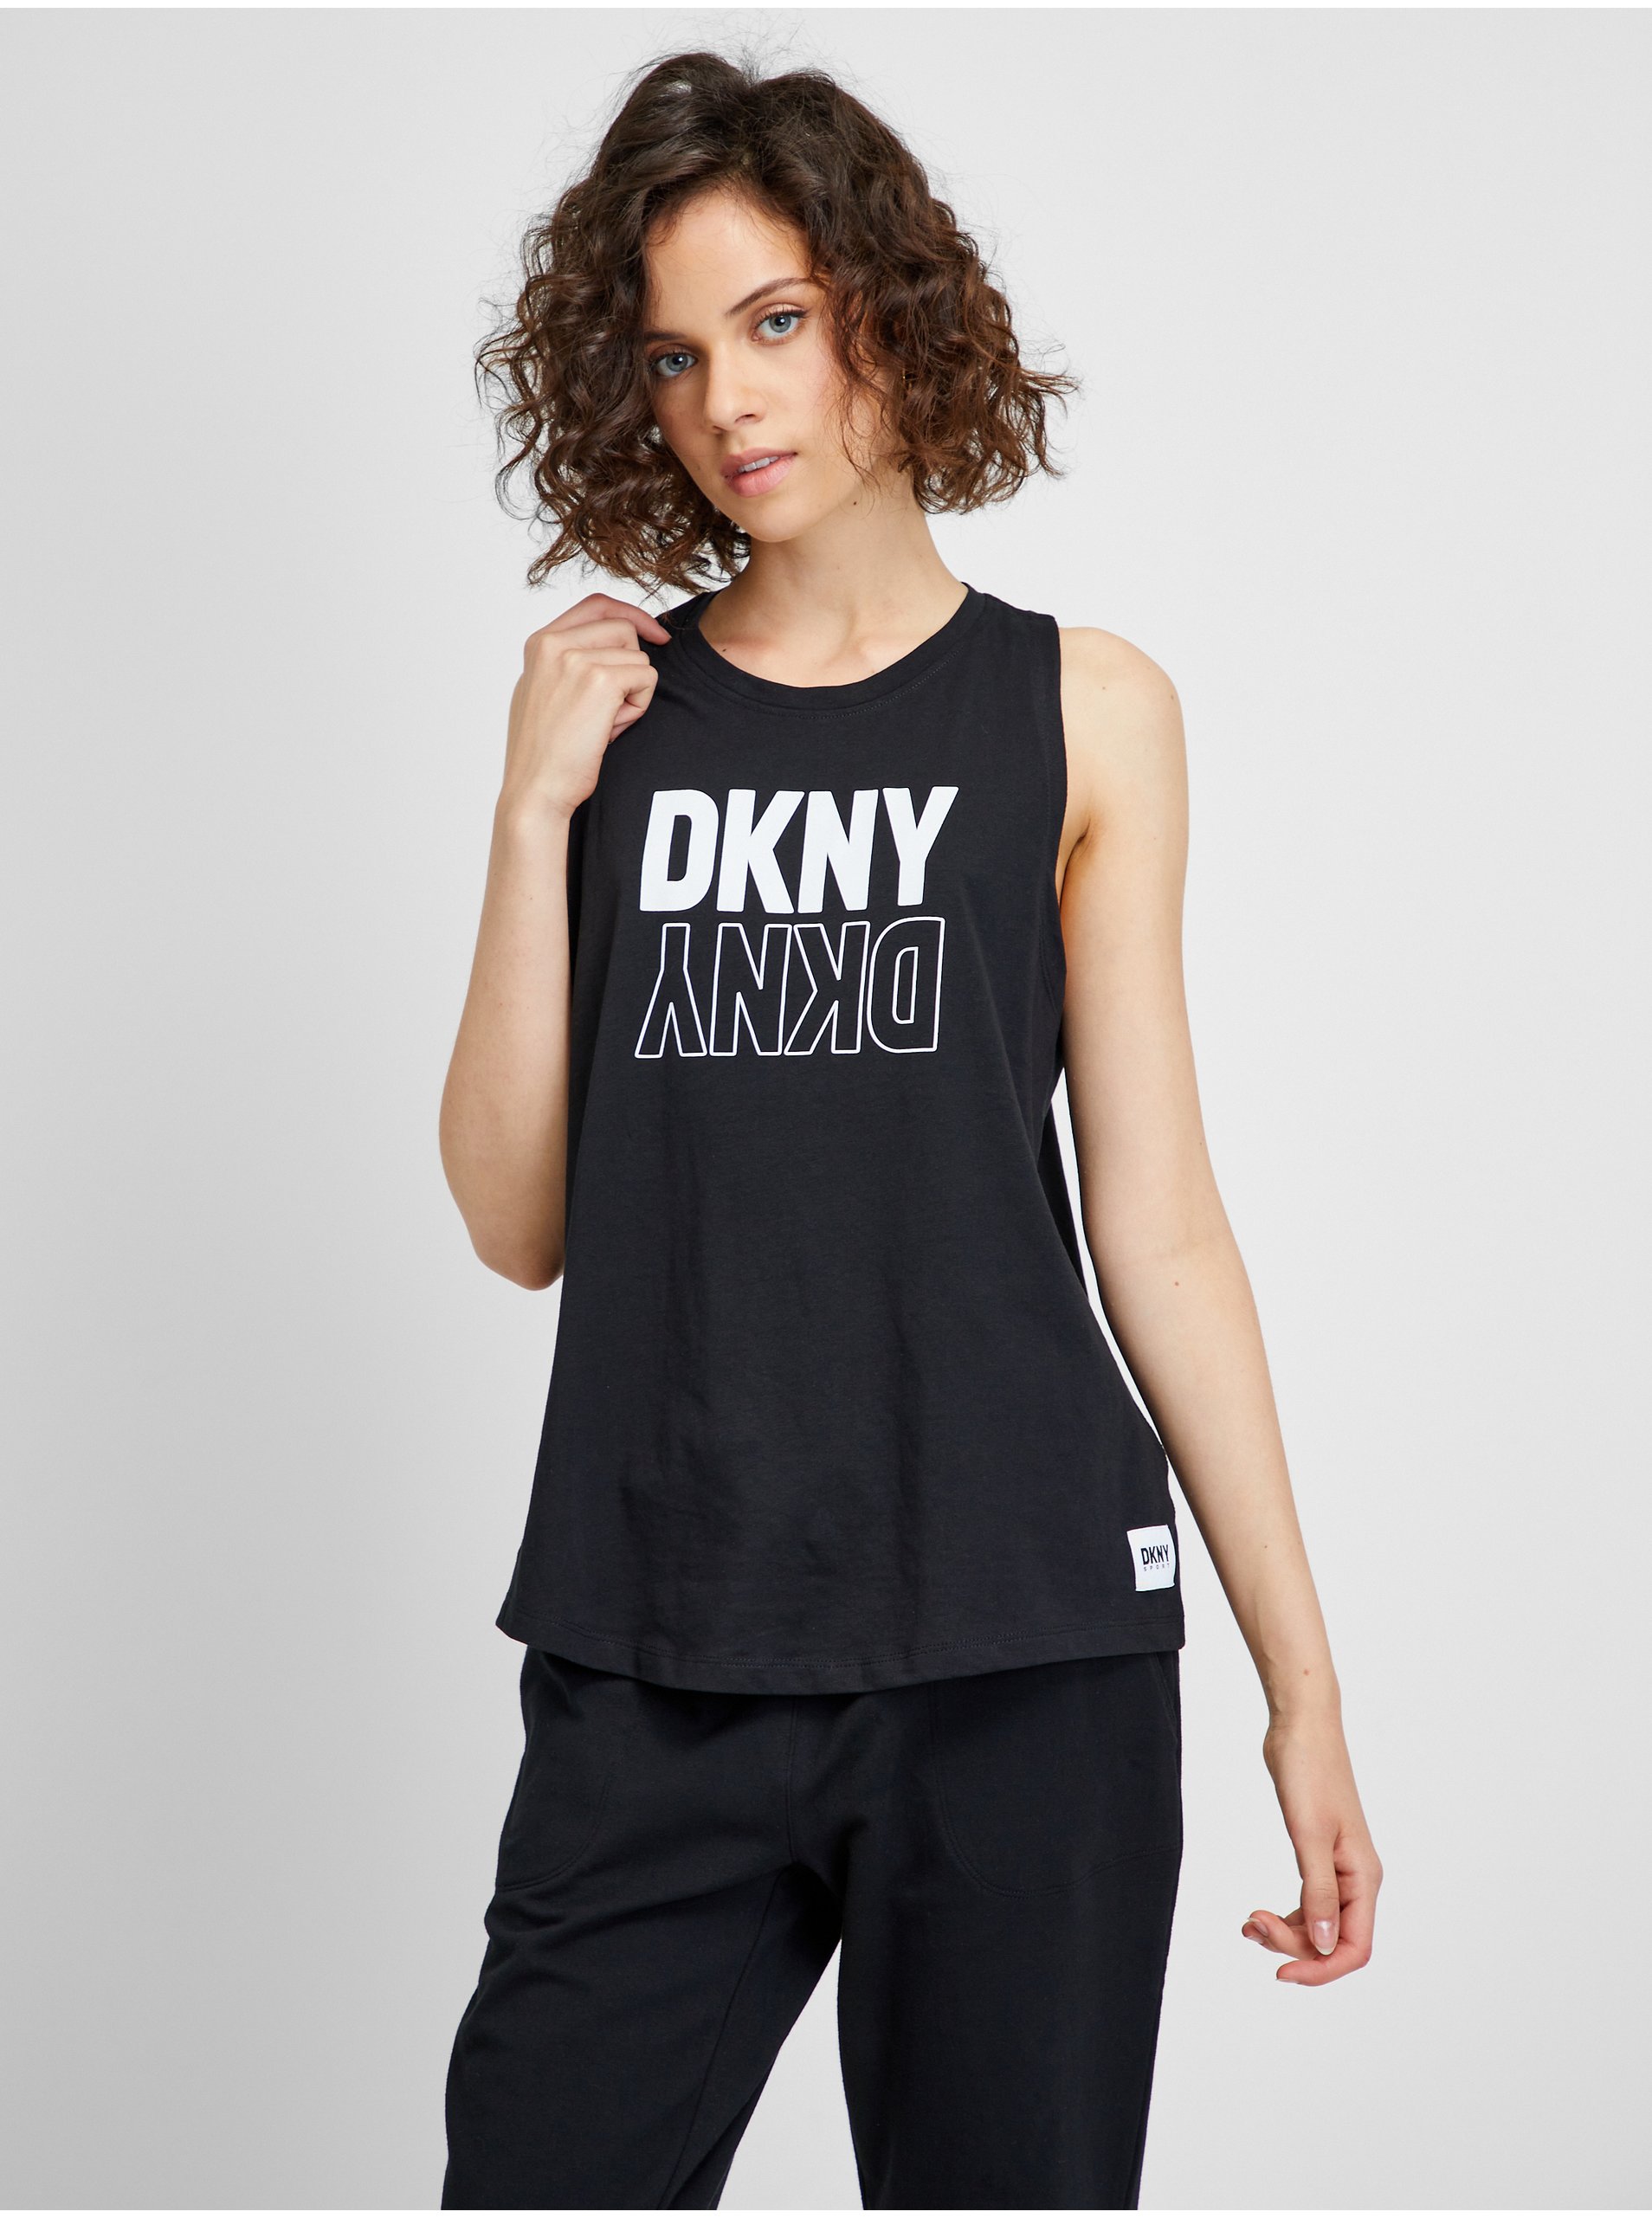 Lacno Čierne dámske tielko DKNY